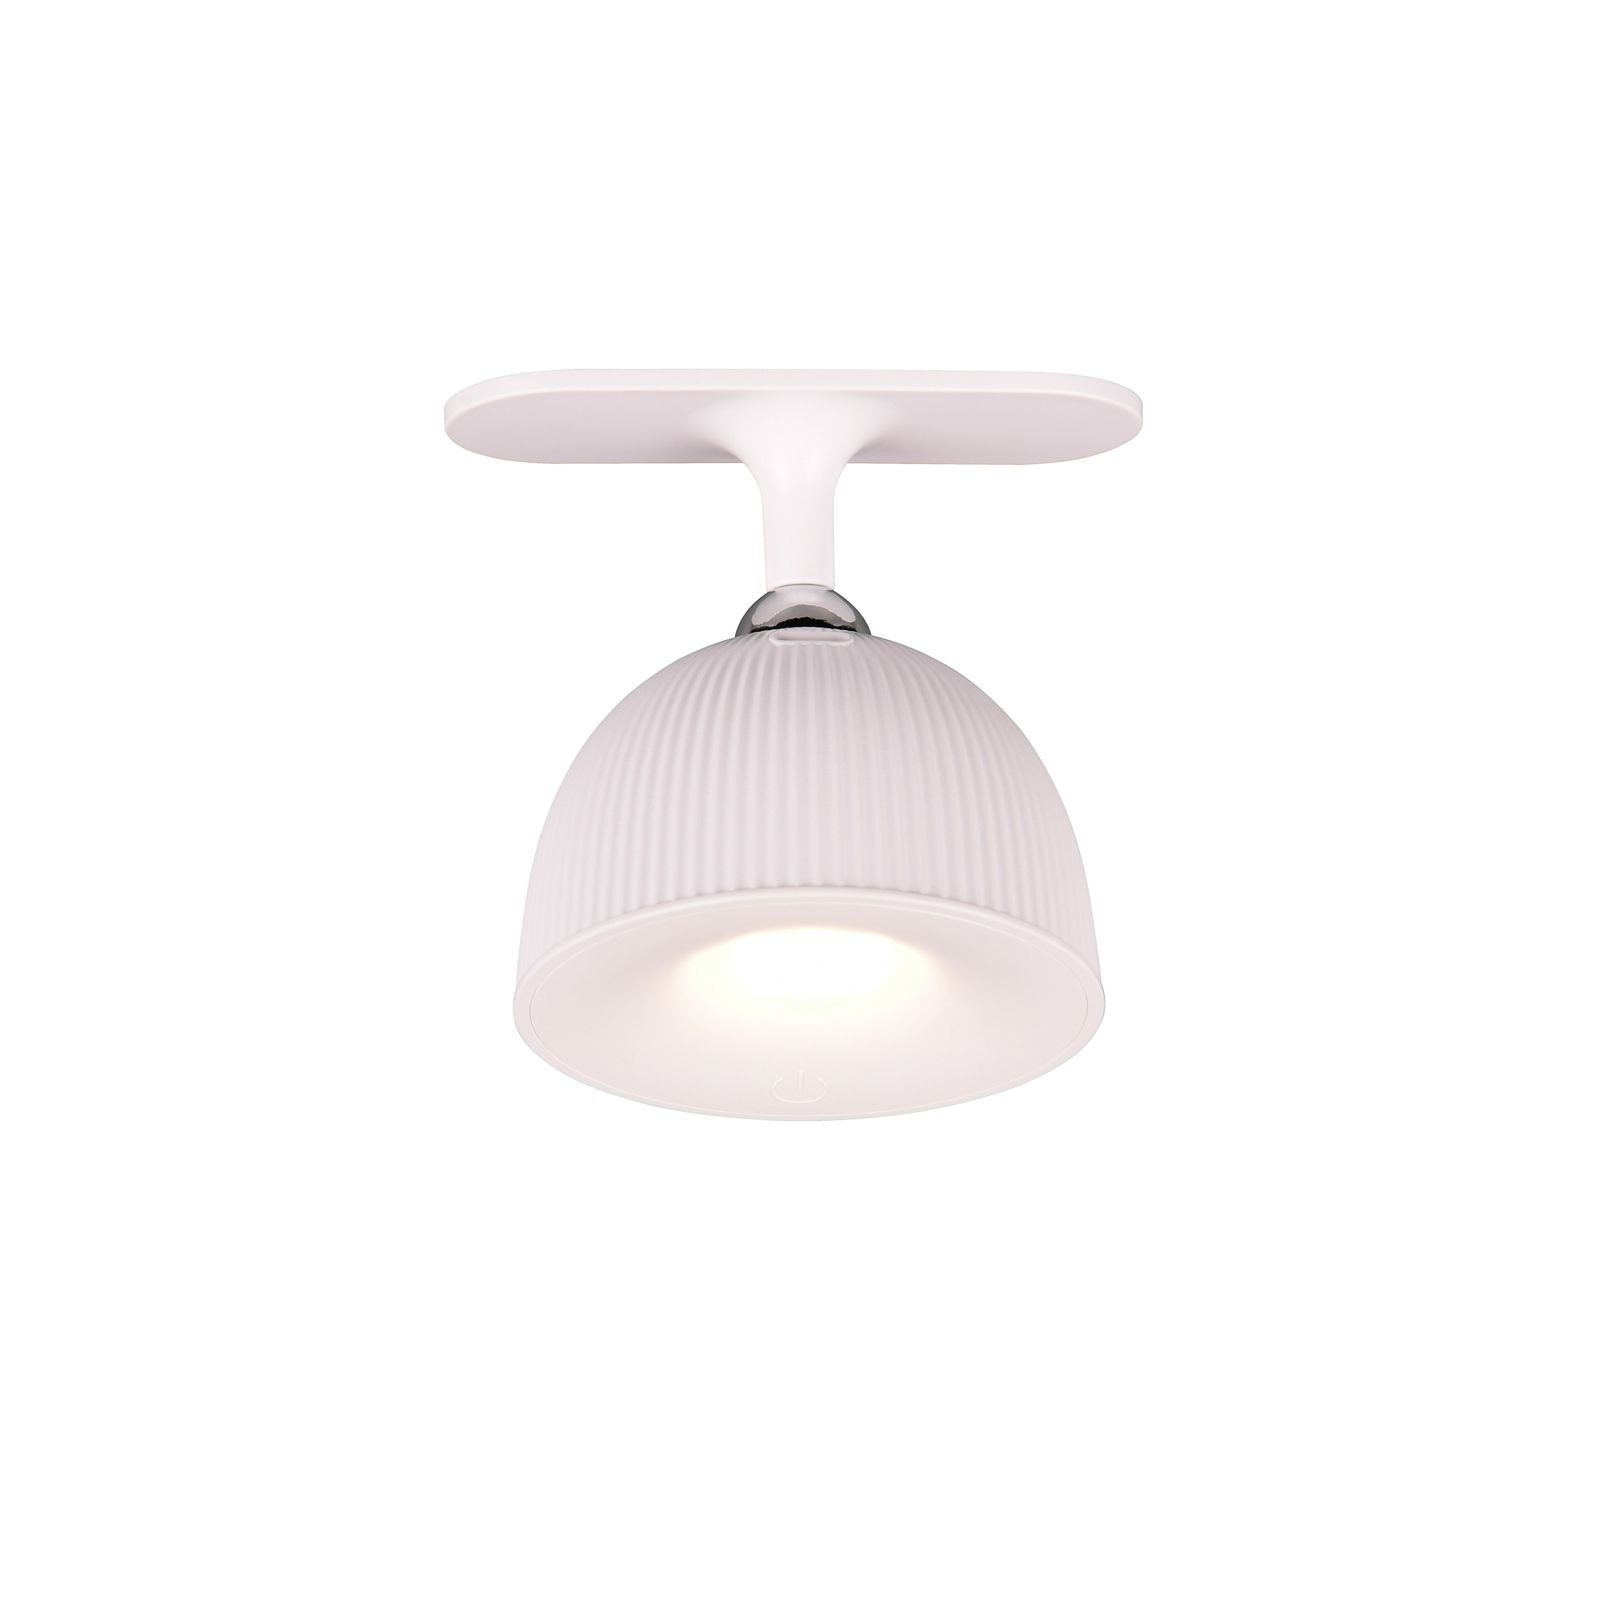 Dobíjacia stolová lampa Maxima LED, biela, výška 41 cm, plast